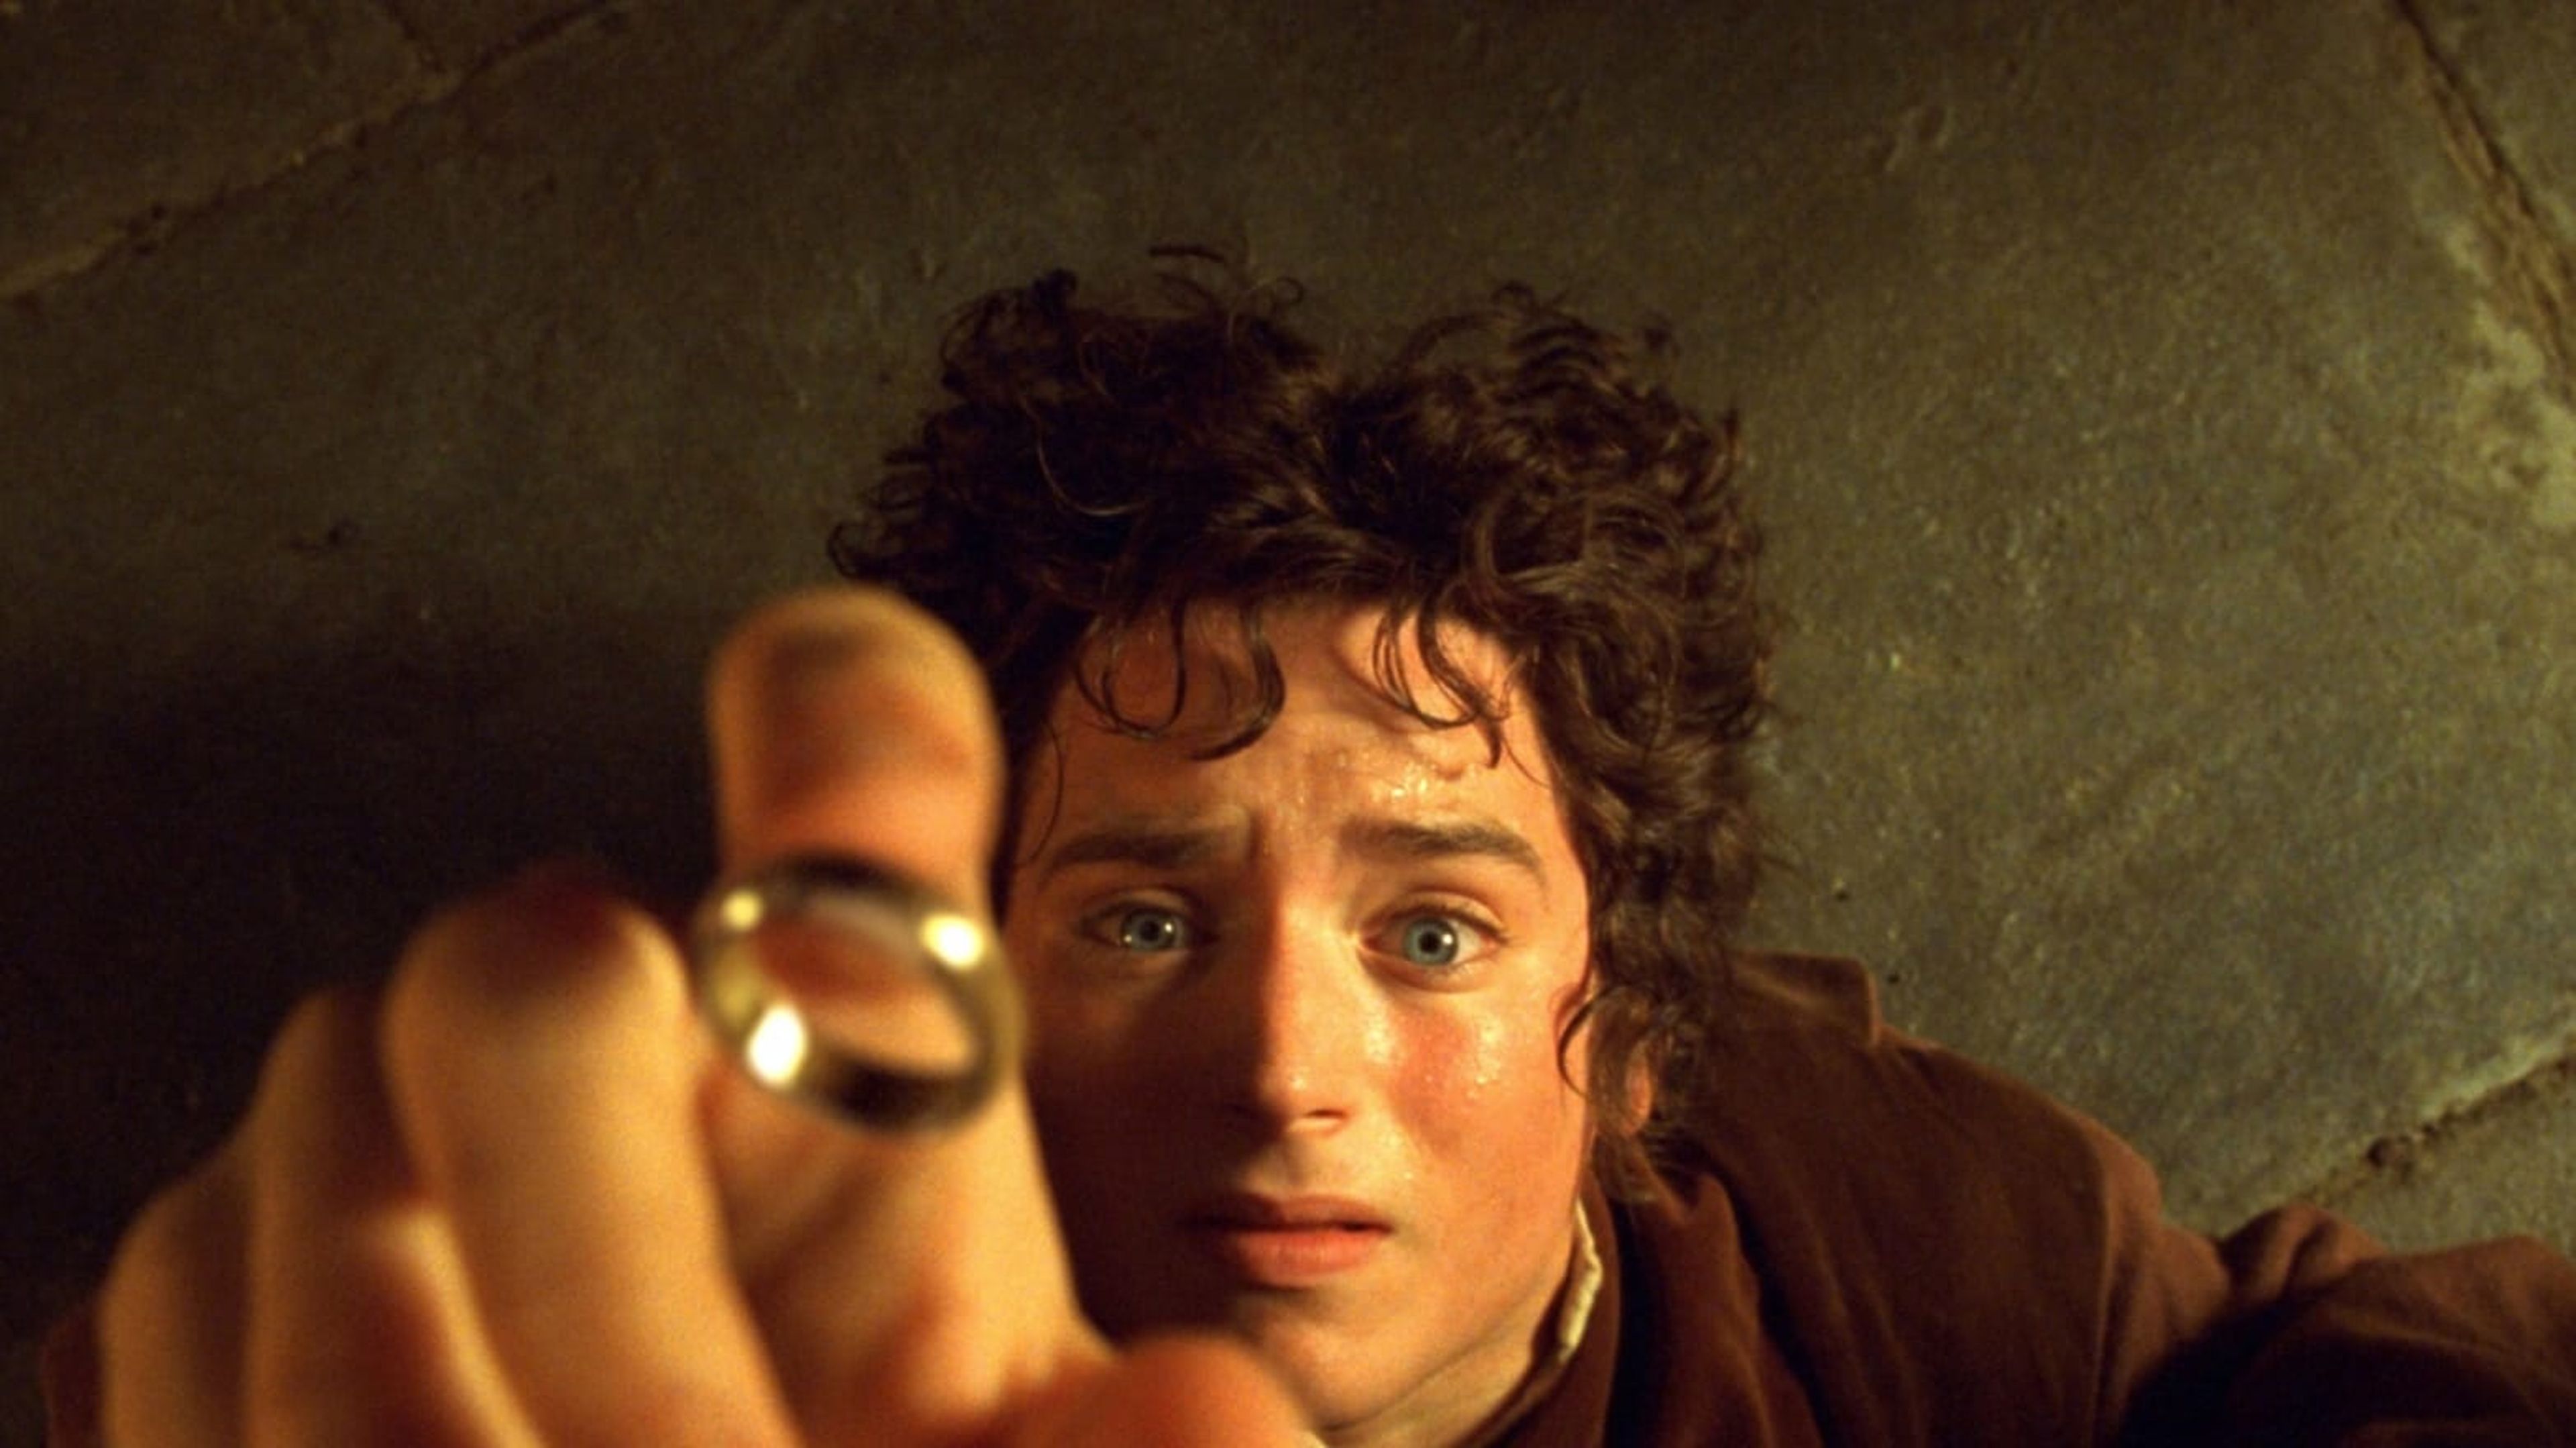 Frodo El Señor de los Anillos